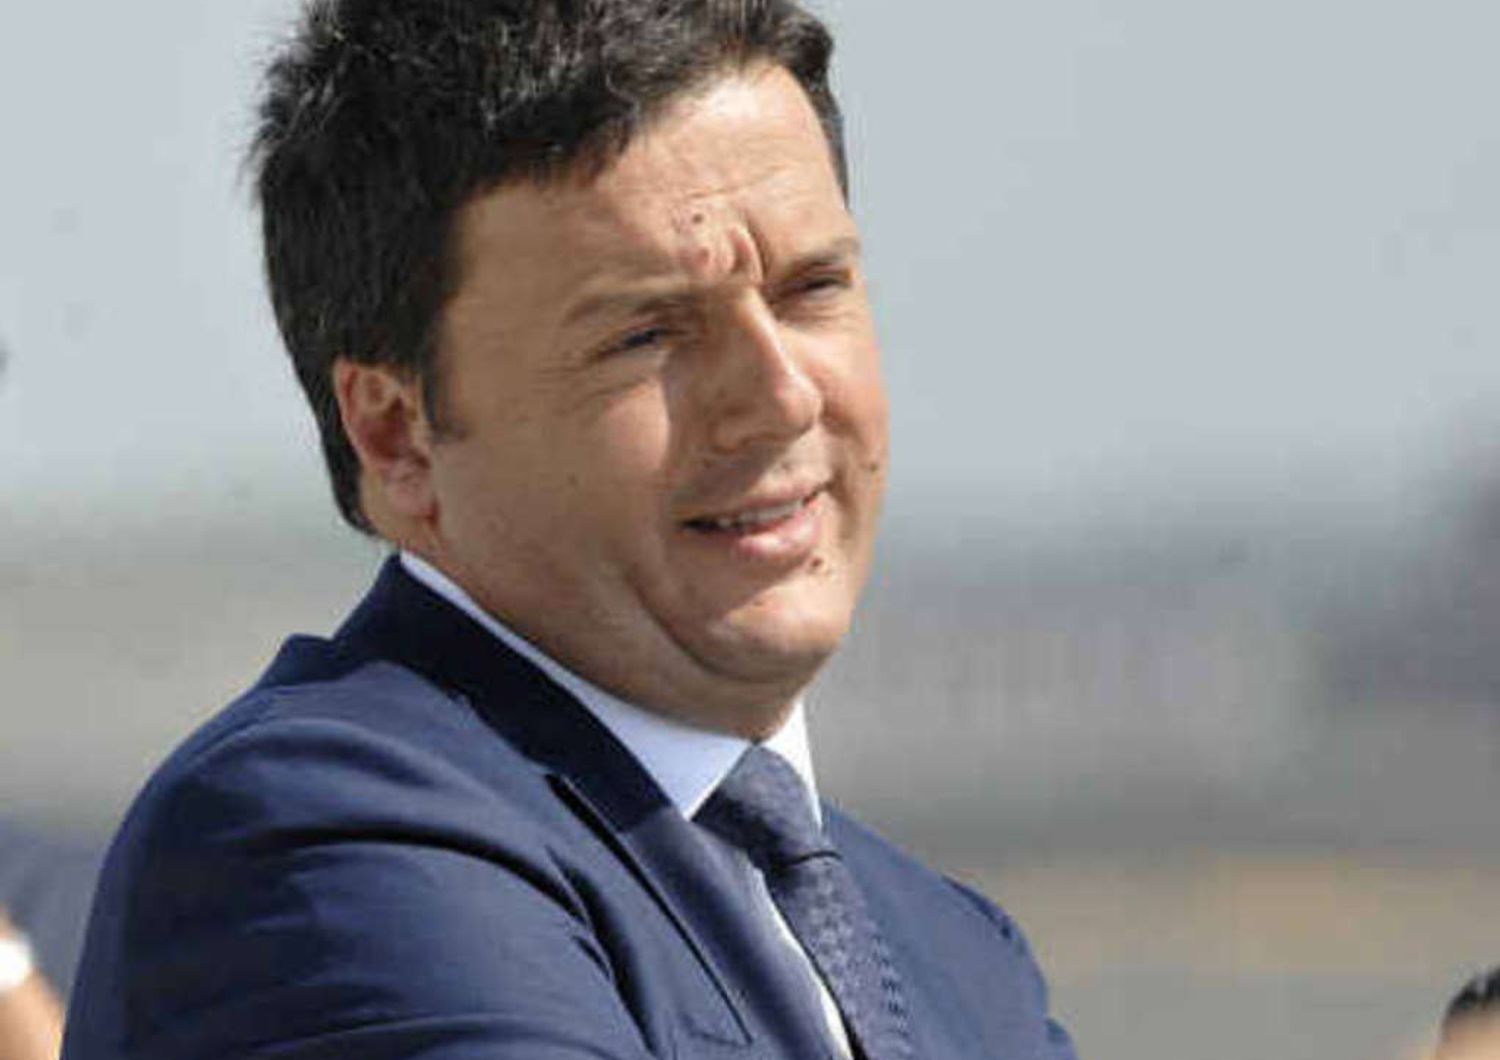 I ministri nelle scuole, Renzi contestato dai precari